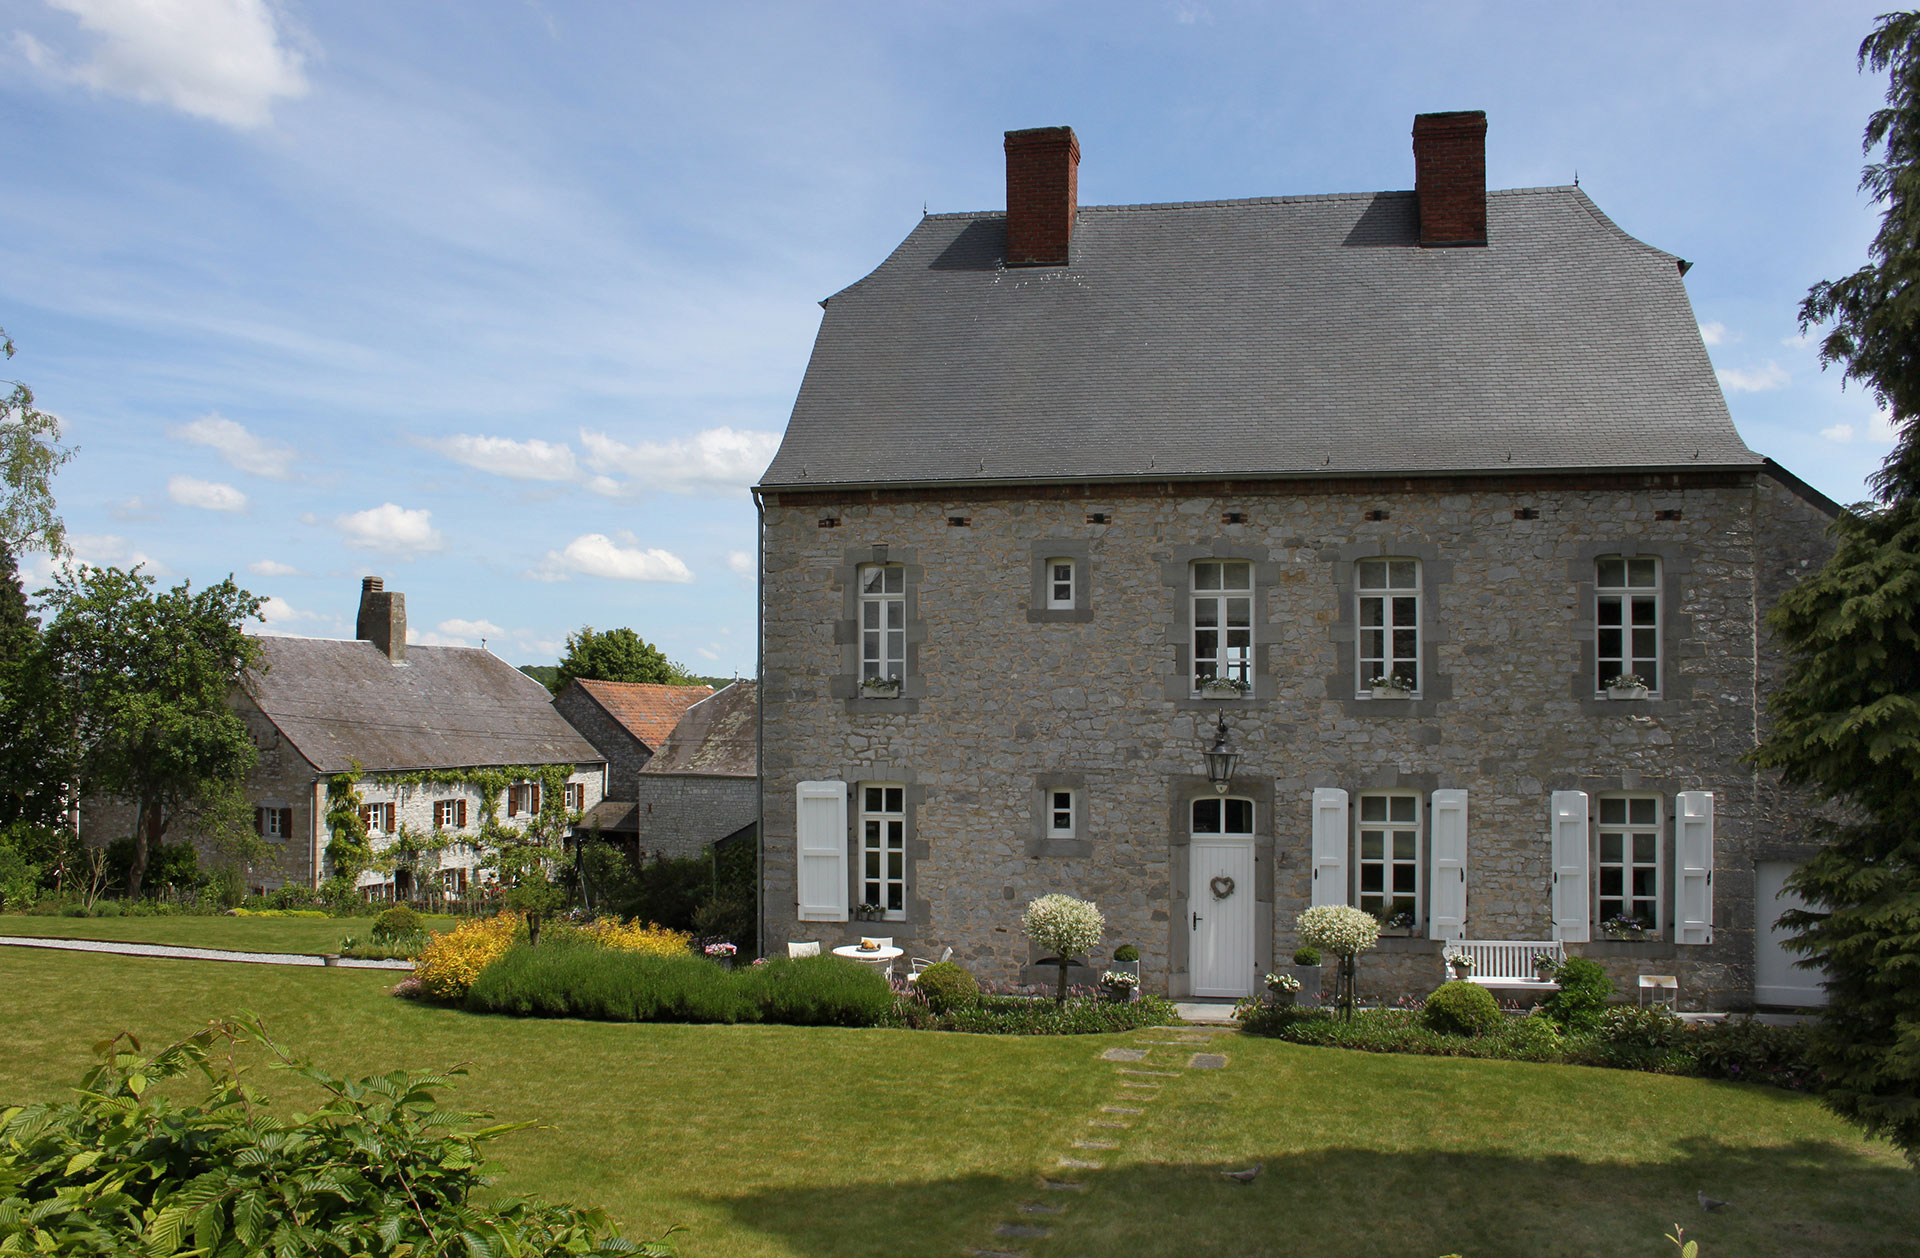 Les plus beaux villages de Wallonie - Soulme - maison - pierres - ciel bleu - jardin